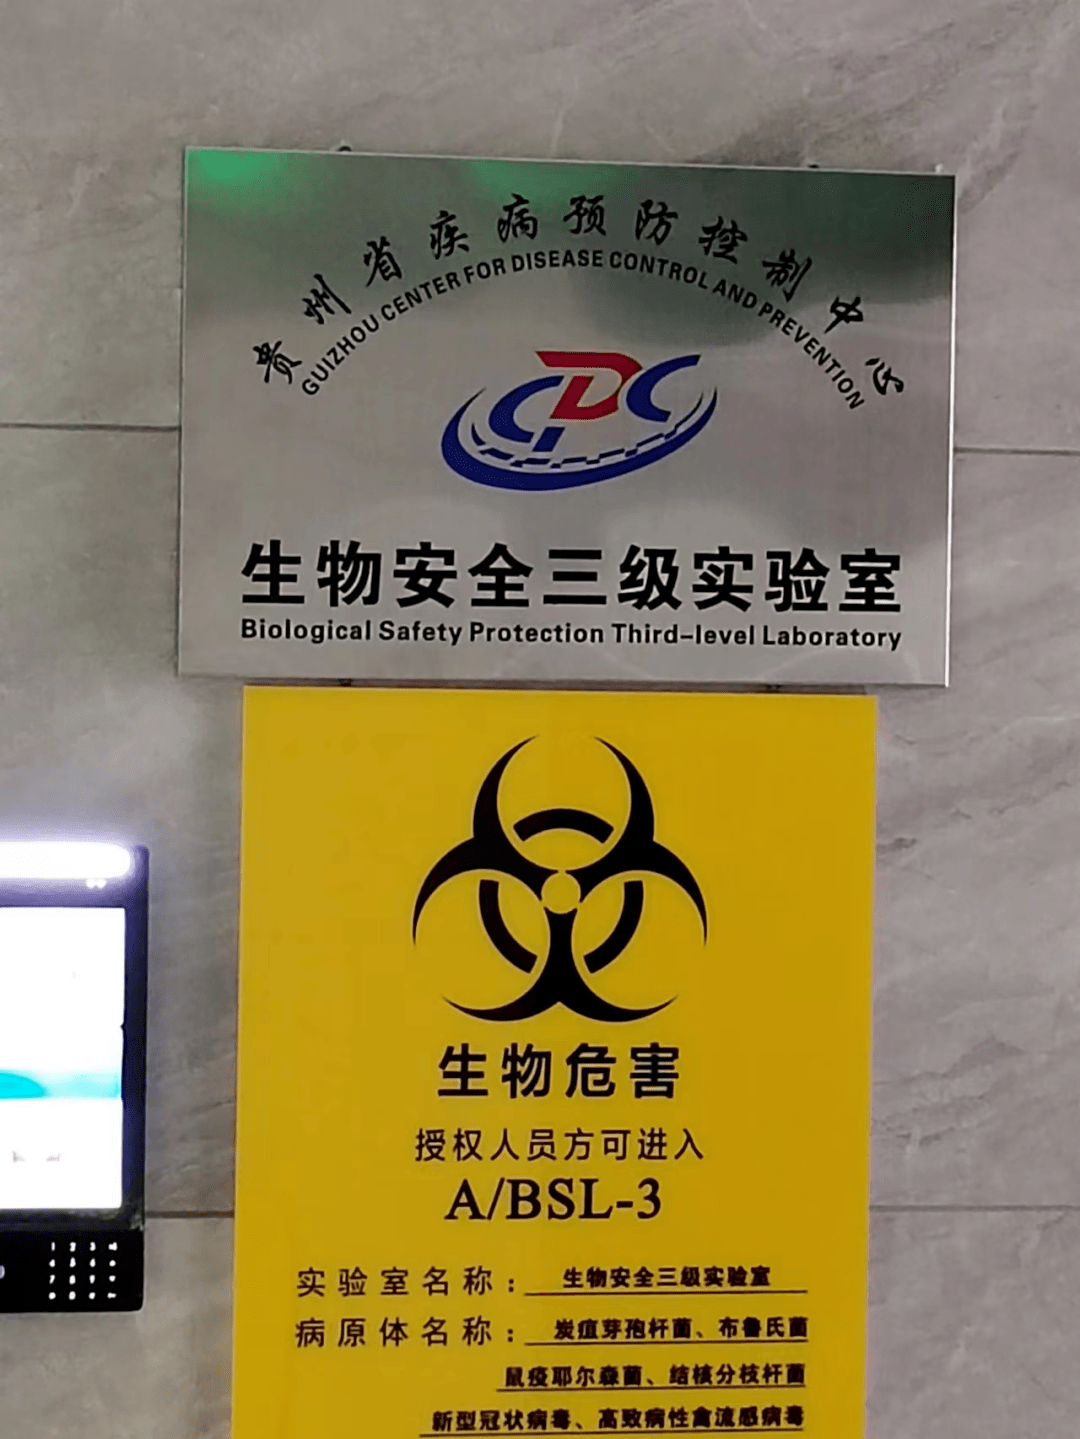 贵州省疾病预防控制中心生物安全三级实验室荣获国家认可资格批准